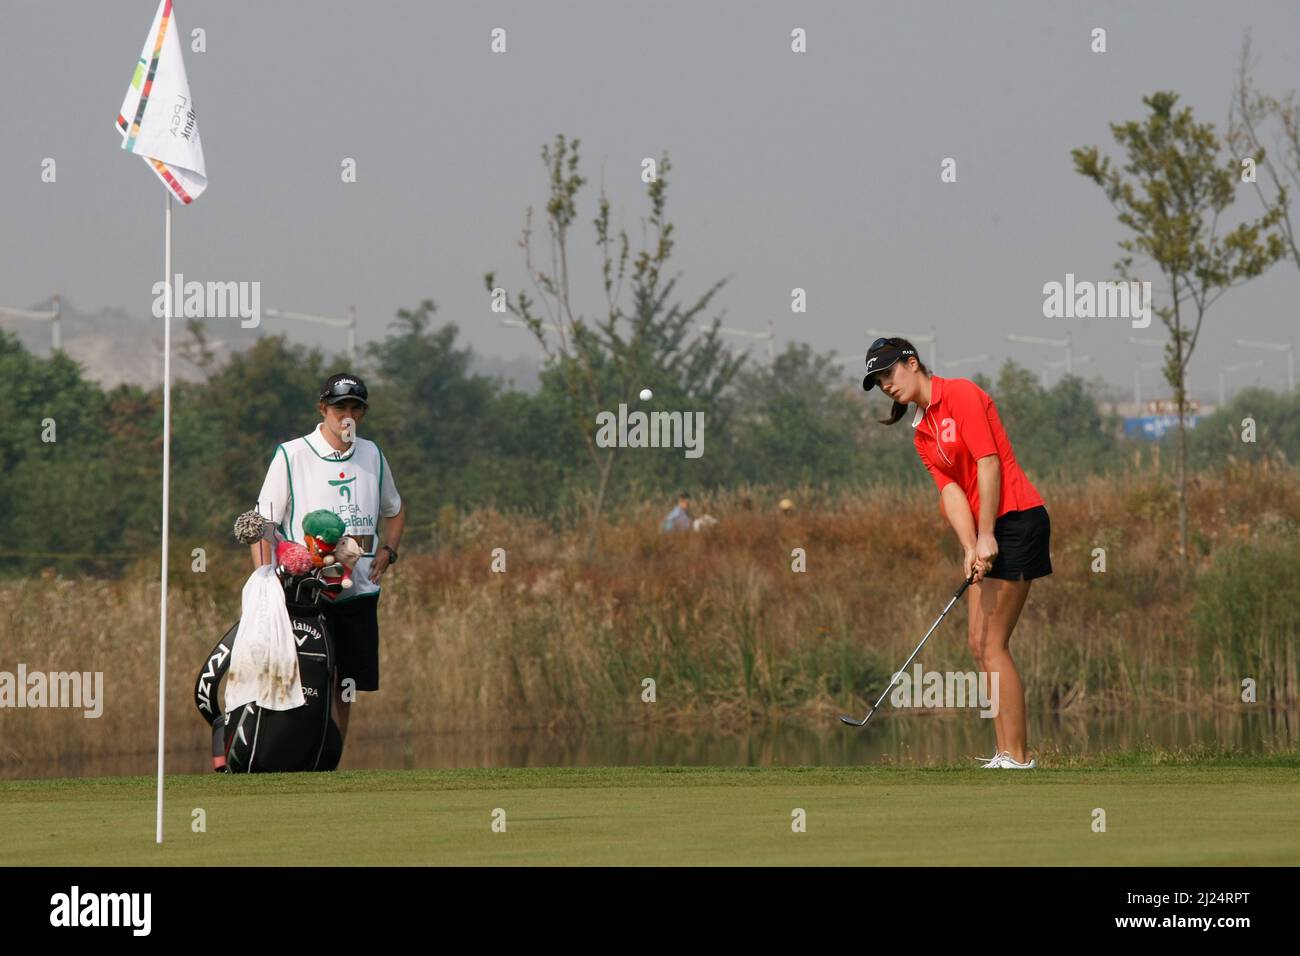 8 oct 2011-Incheon, Corée du Sud-GAL, Sandra d'Allemagne, joue un deuxième tir de shes sur le 2th trous lors du championnat LPGA par Hana Bank au club de golf SKY72 à Incheon le 8 oct 2011, Corée du Sud. Banque D'Images